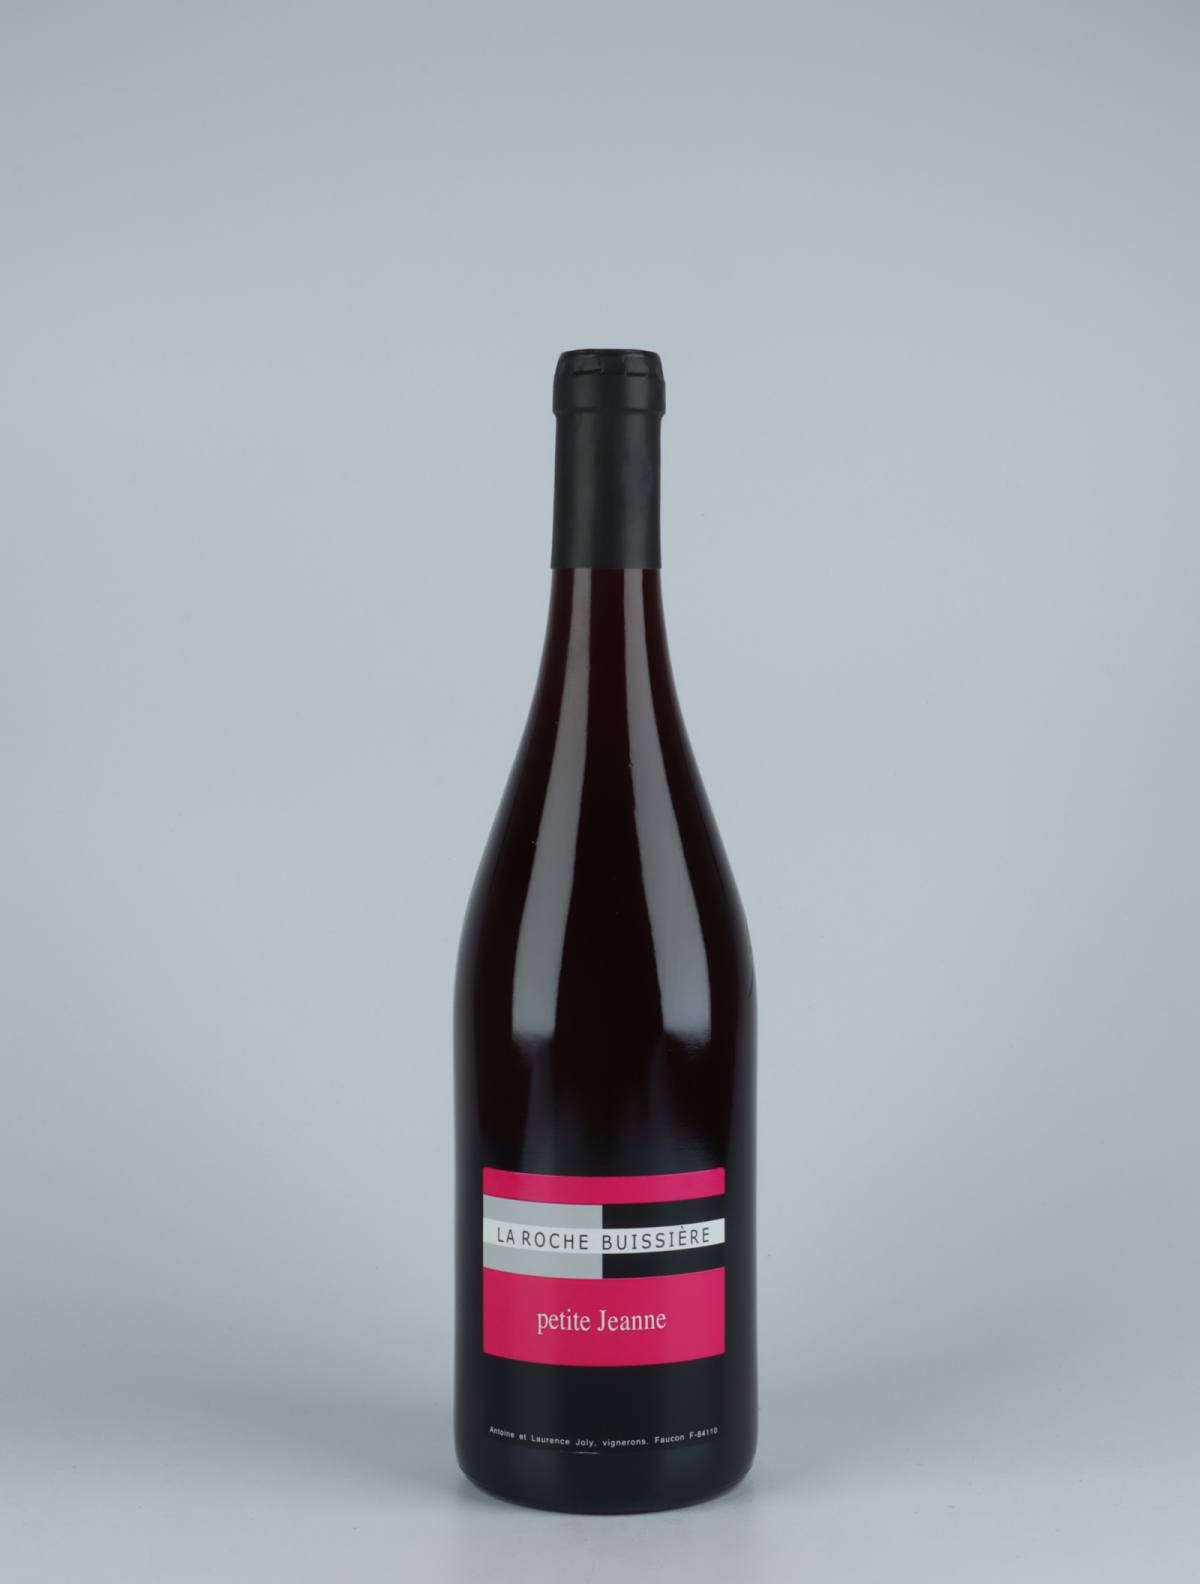 A bottle 2020 Petite Jeanne Red wine from La Roche Buissière, Rhône in France